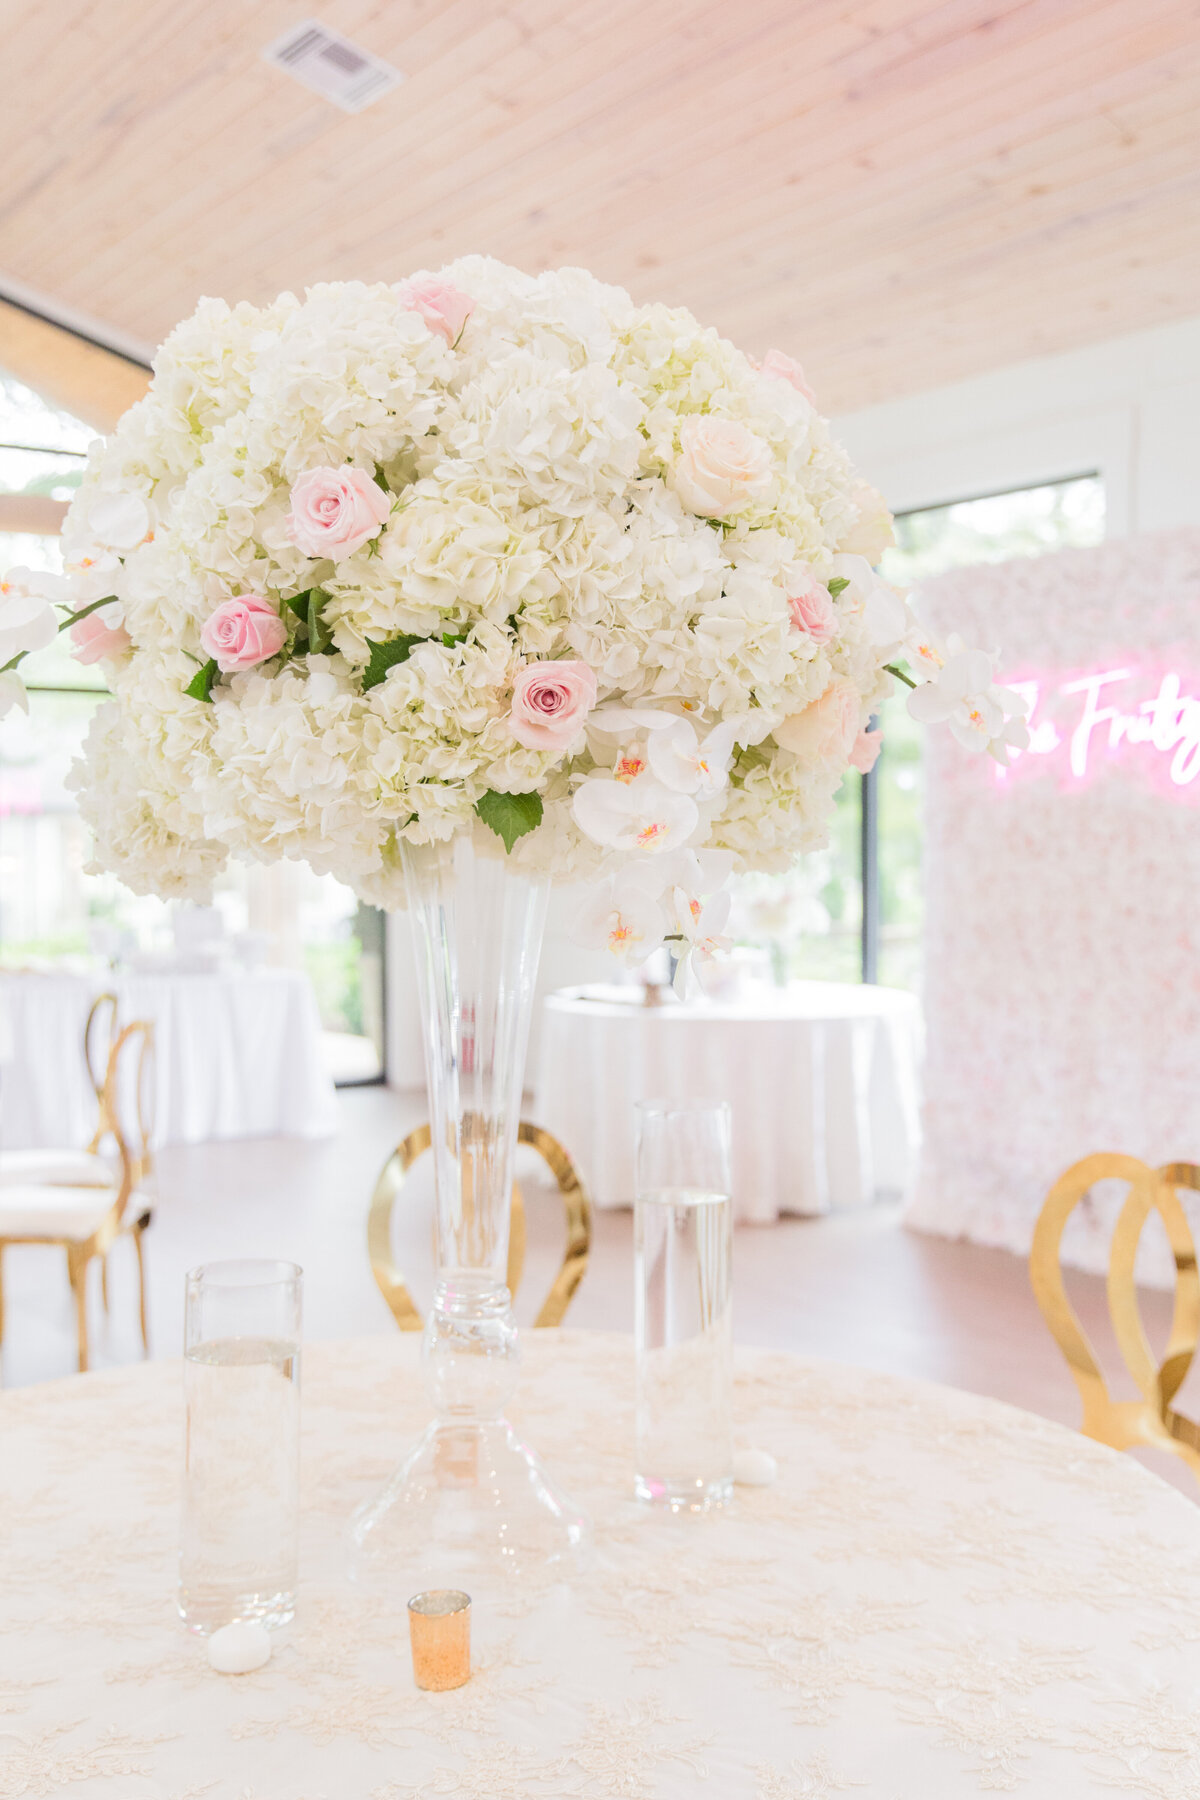 a floral arrangement as a table centerpiece